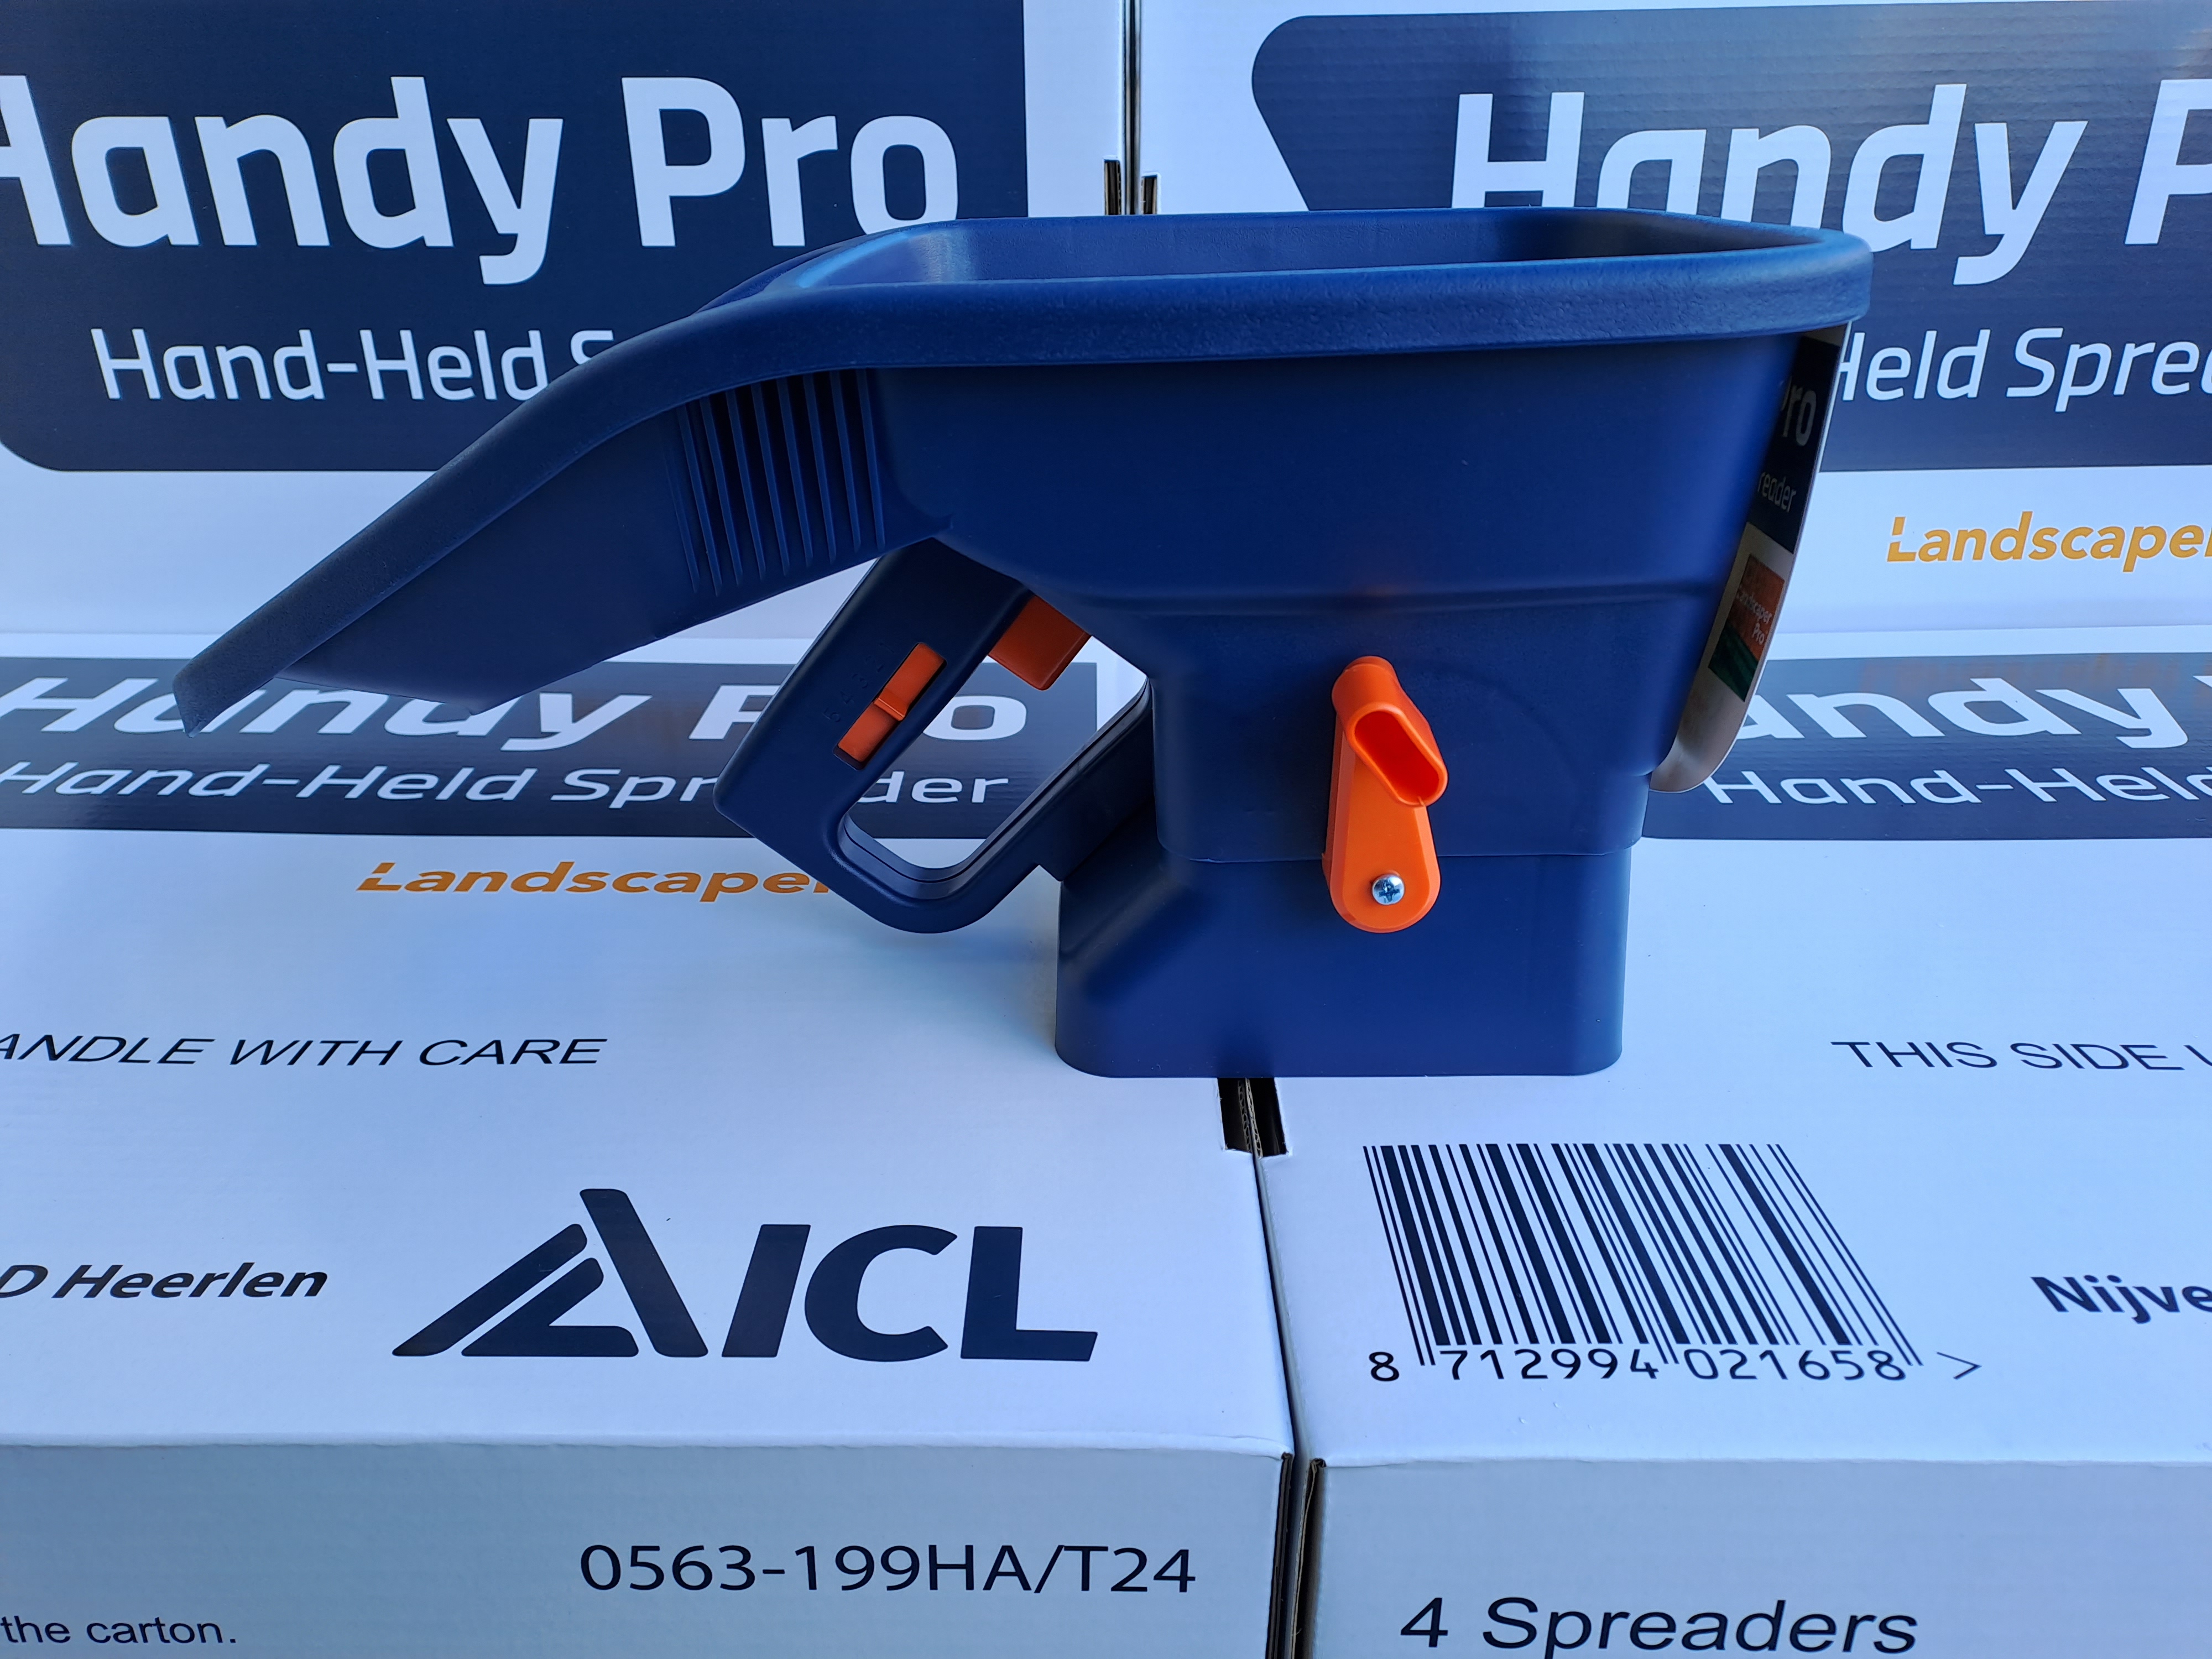 ICL Handy Pro kézi műtrágyaszóró gép